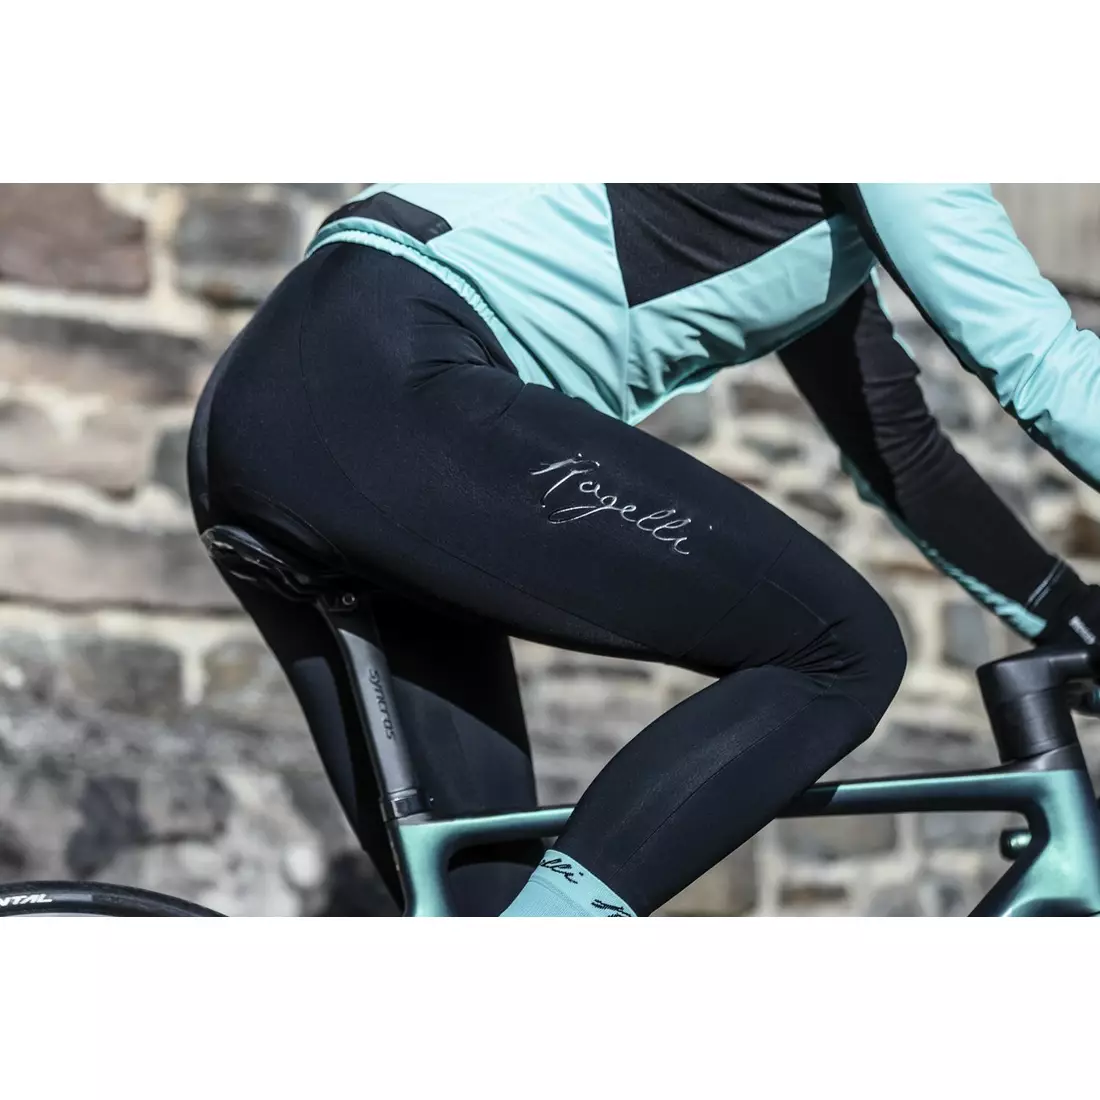 ROGELLI spodnie rowerowe damskie na szelkach ESSENTIAL black ROG351077